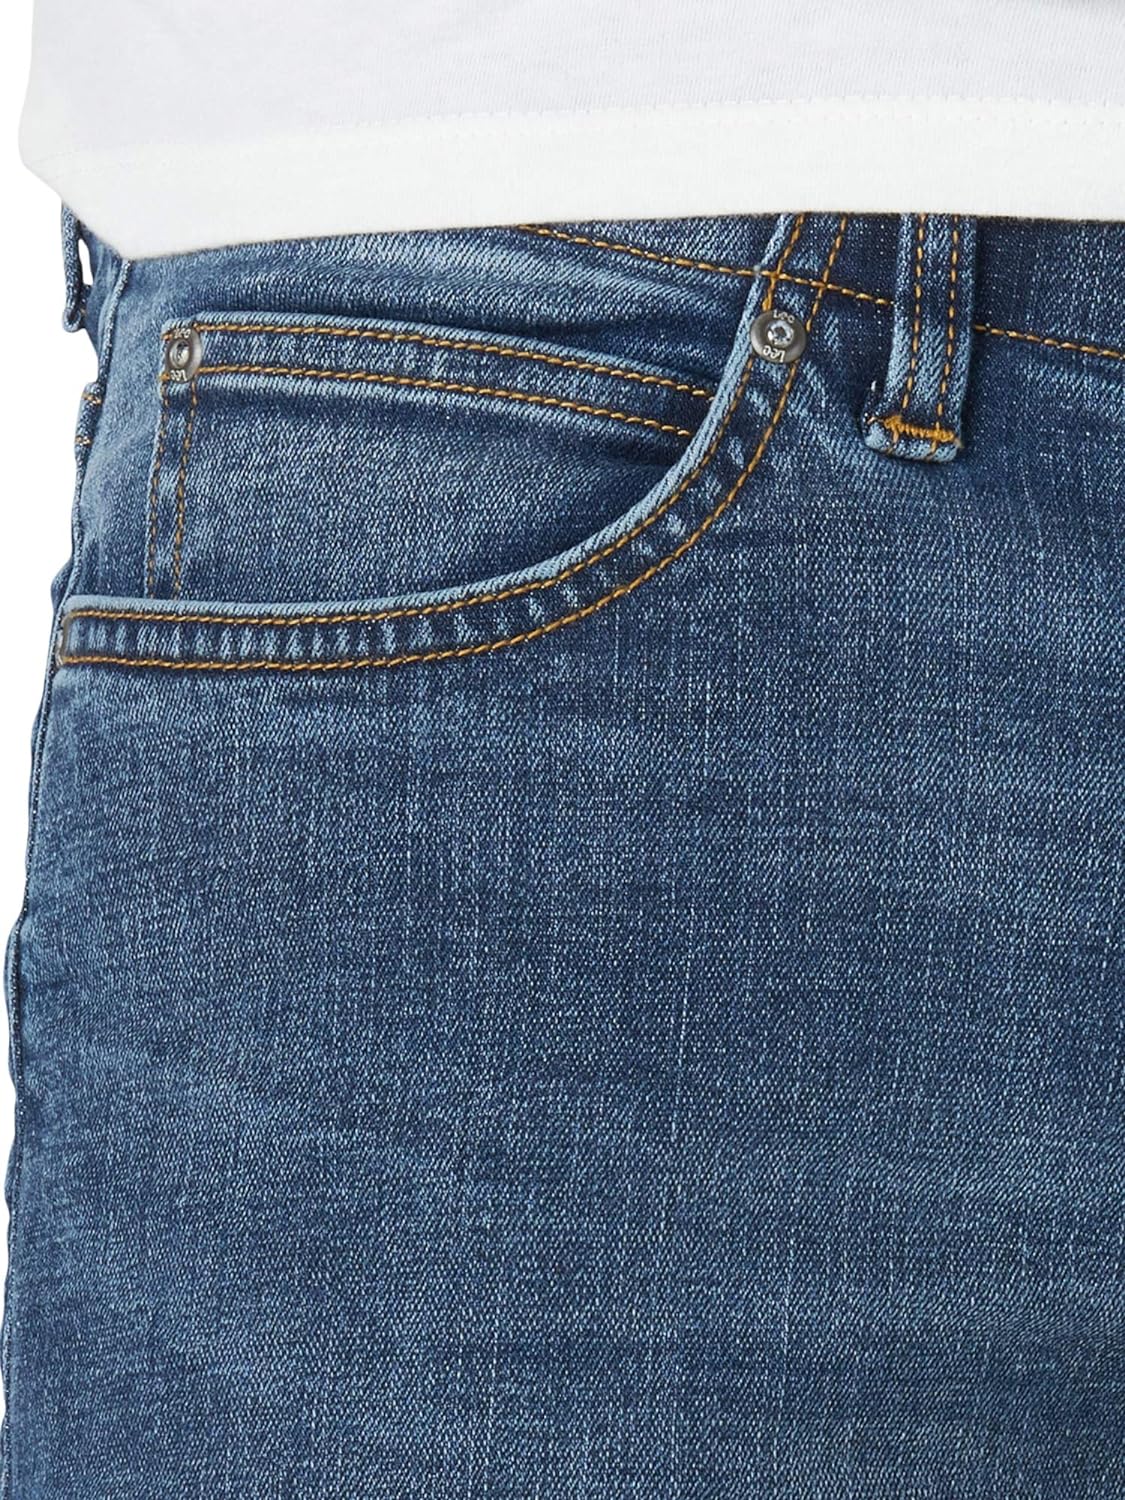 بنطلون جينز رجالي من سلسلة بيرفورمانس اكستريم موشن من ليي